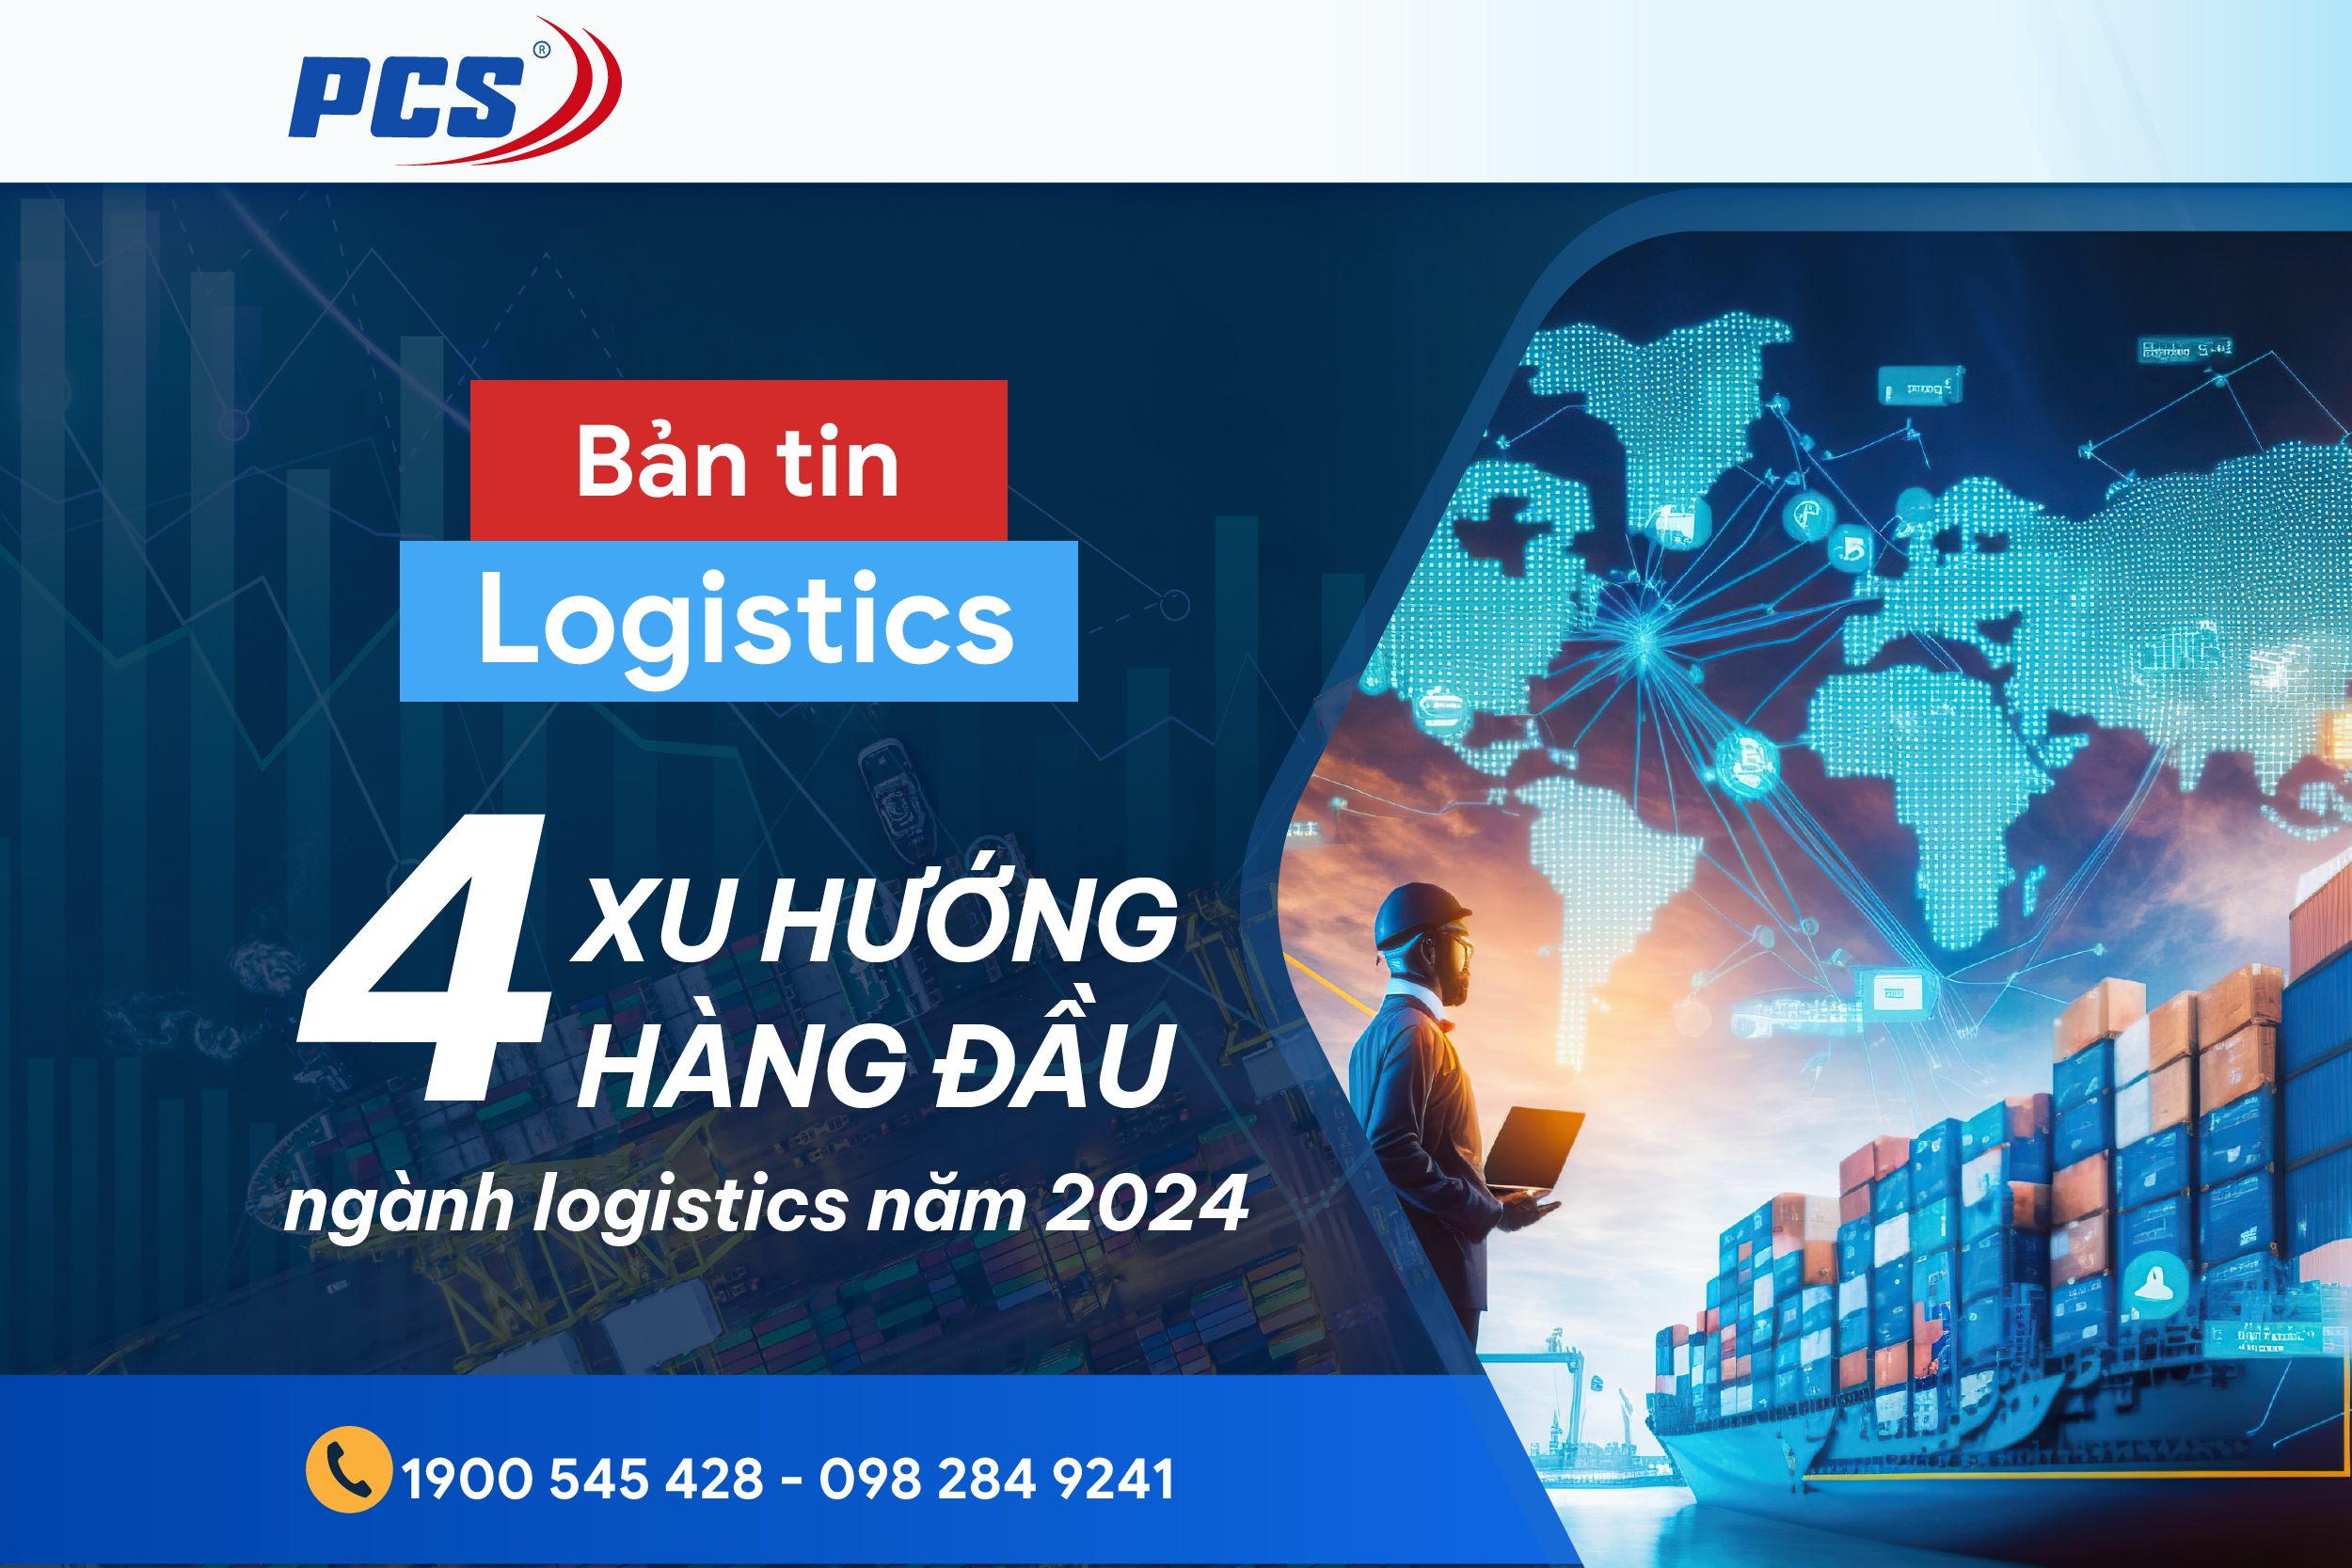 Bốn xu hướng nổi bật hàng đầu của ngành logistics 2024